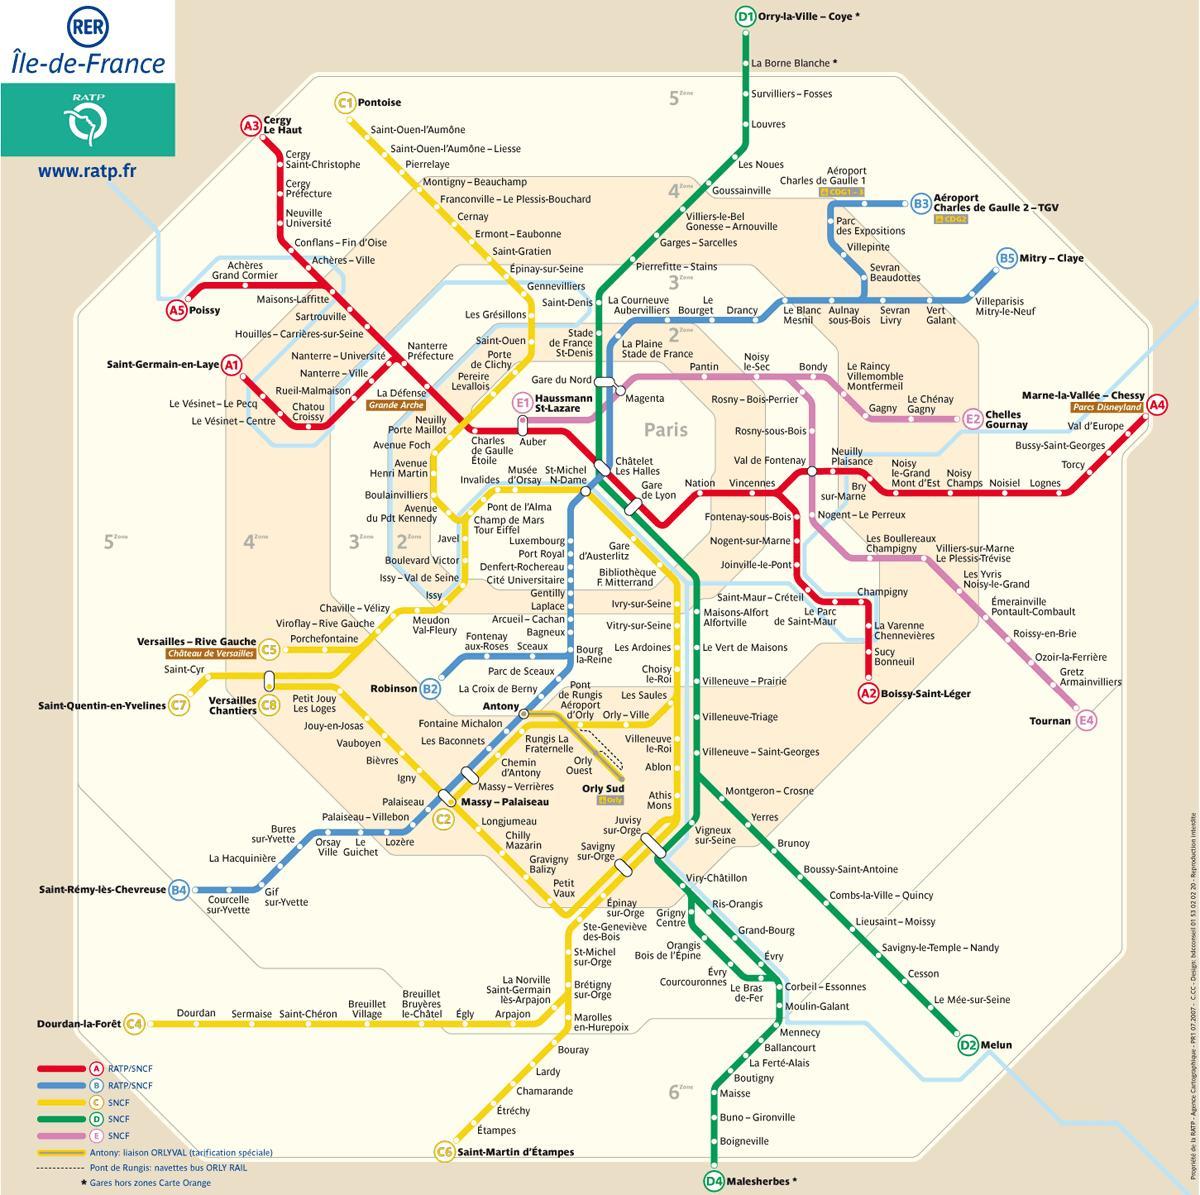 Zemljevid RER